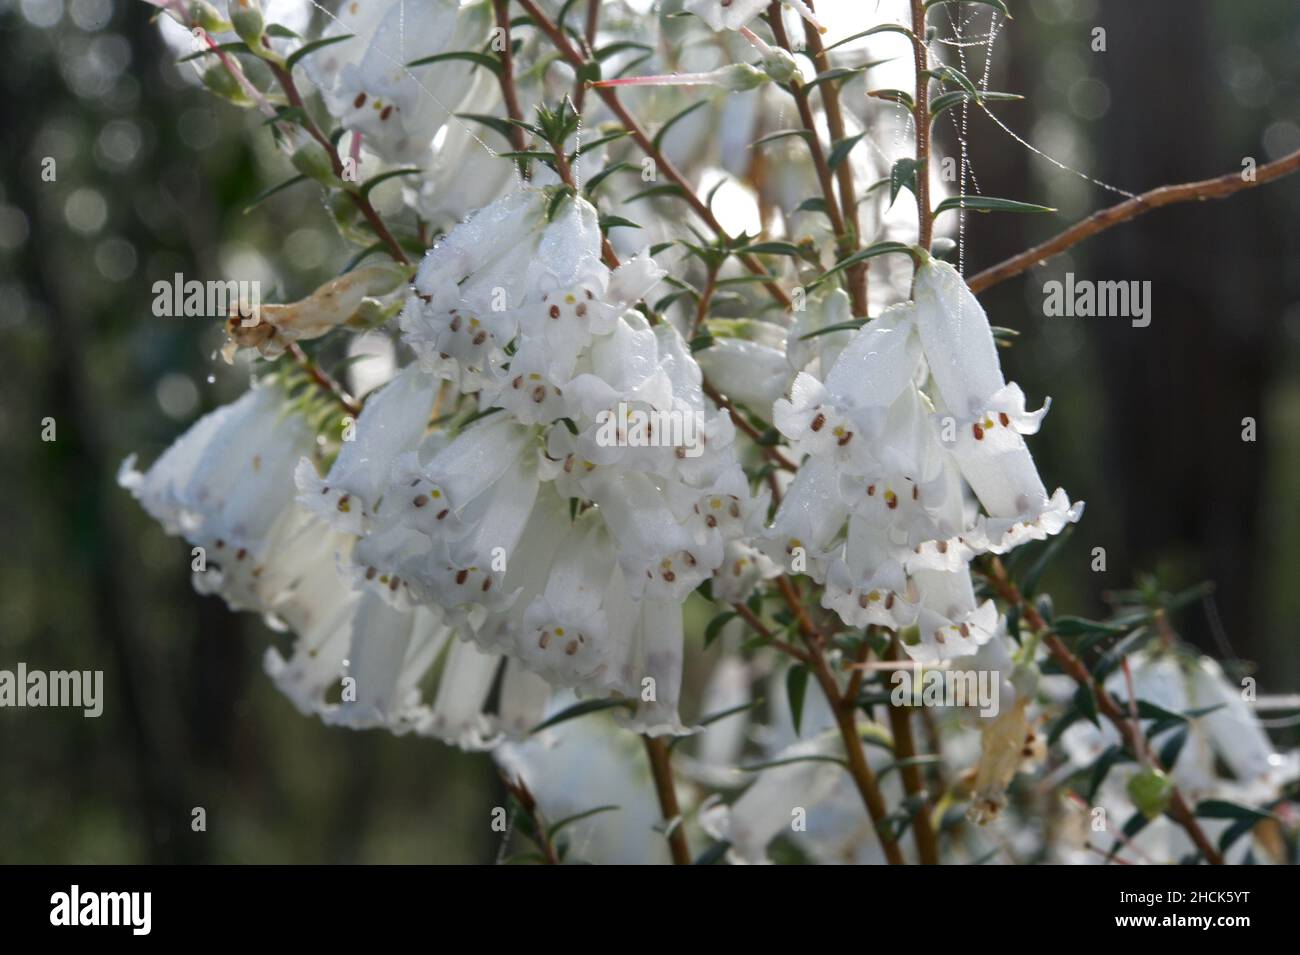 Common Heath (Epacris Impressa) ha 2 colori diversi - rosso o bianco. Questo bianco sembra molto grazioso con alcune gocce di pioggia che brillano al sole. Foto Stock